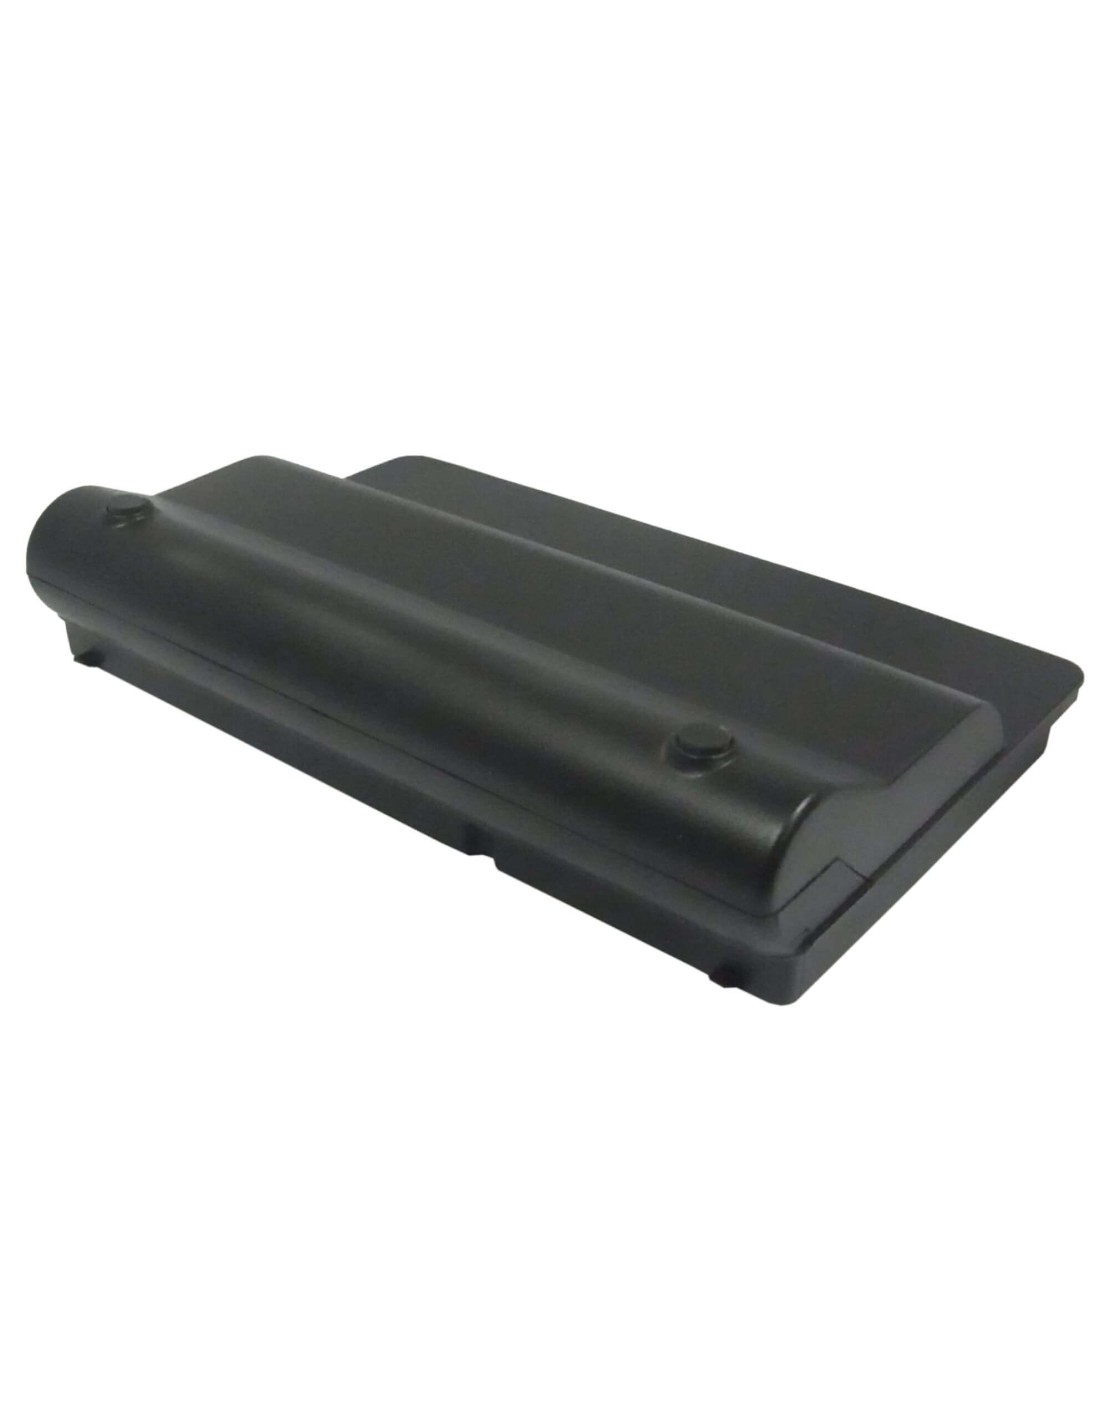 Black Battery for HP Mini, Mini 1000, Mini 1001 11.1V, 4400mAh - 48.84Wh